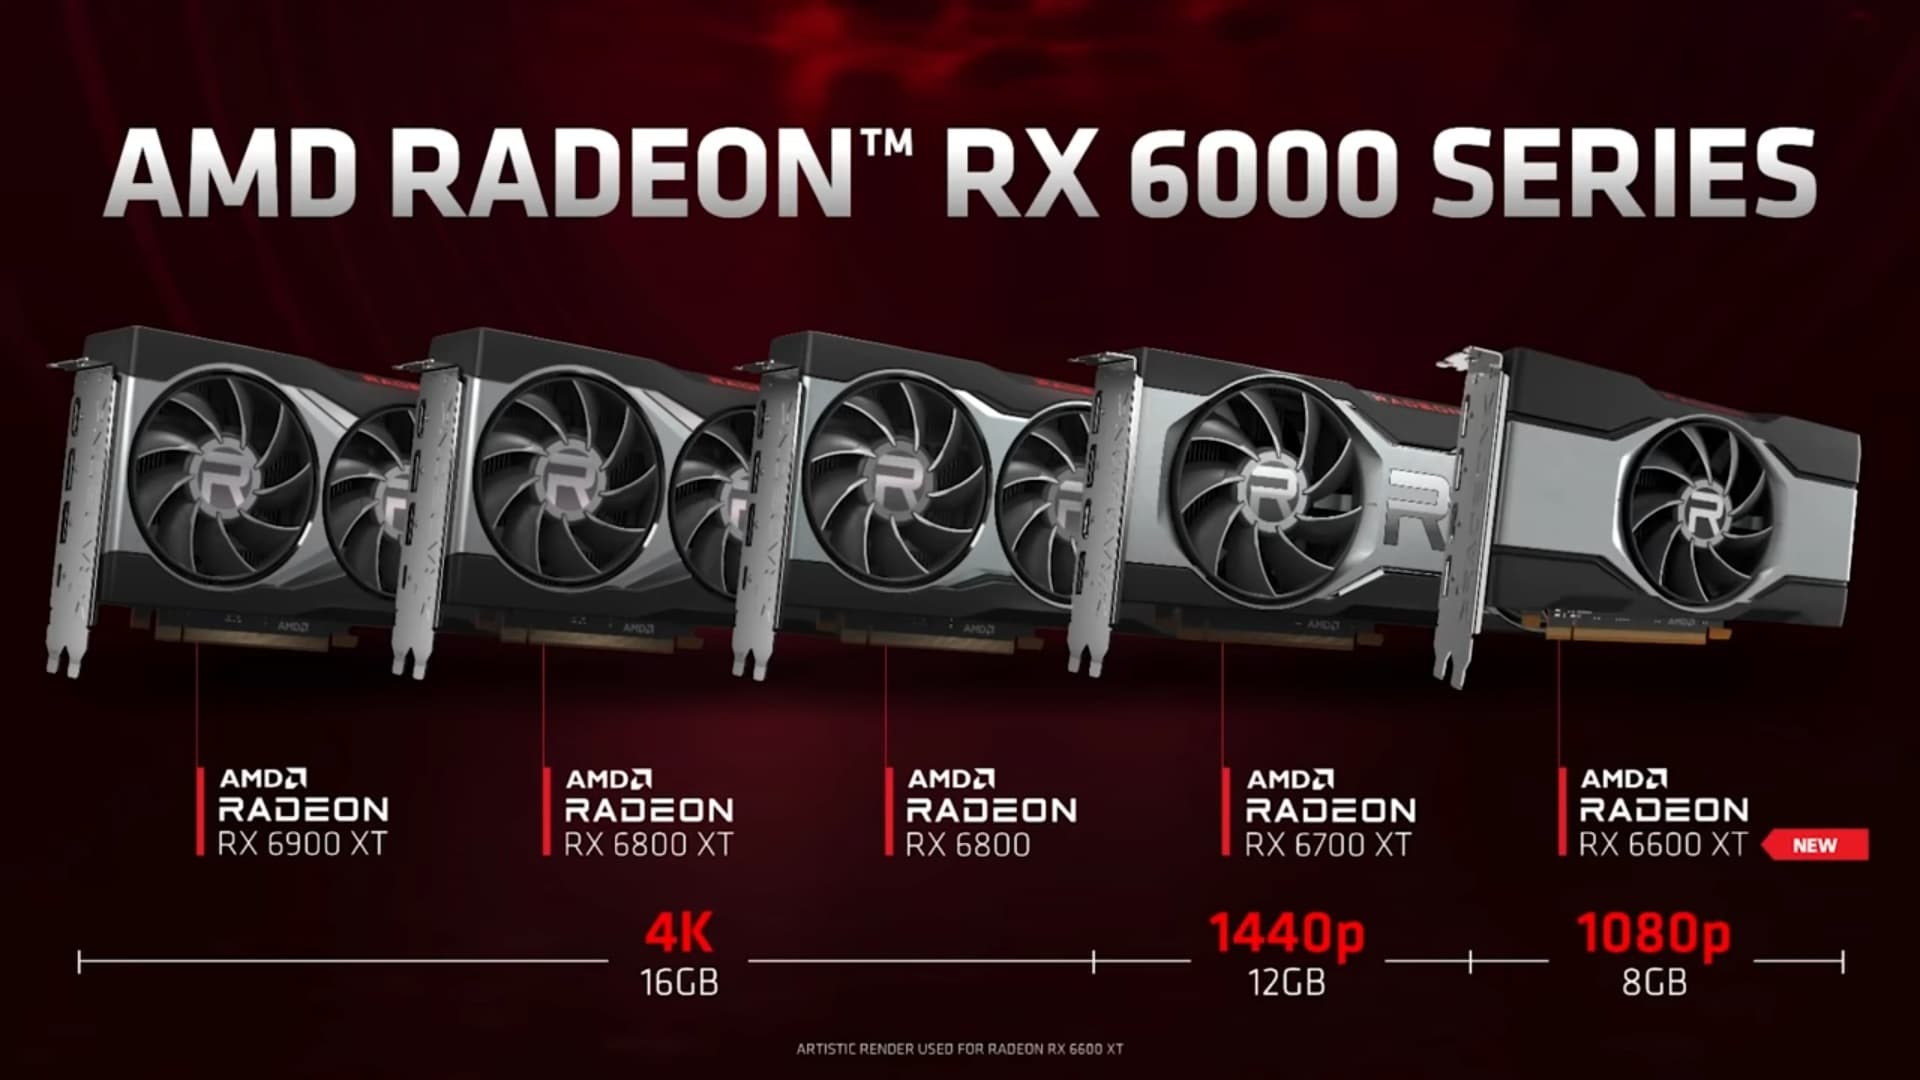 AMD RAdeon série 6000 com RX 6600 XT